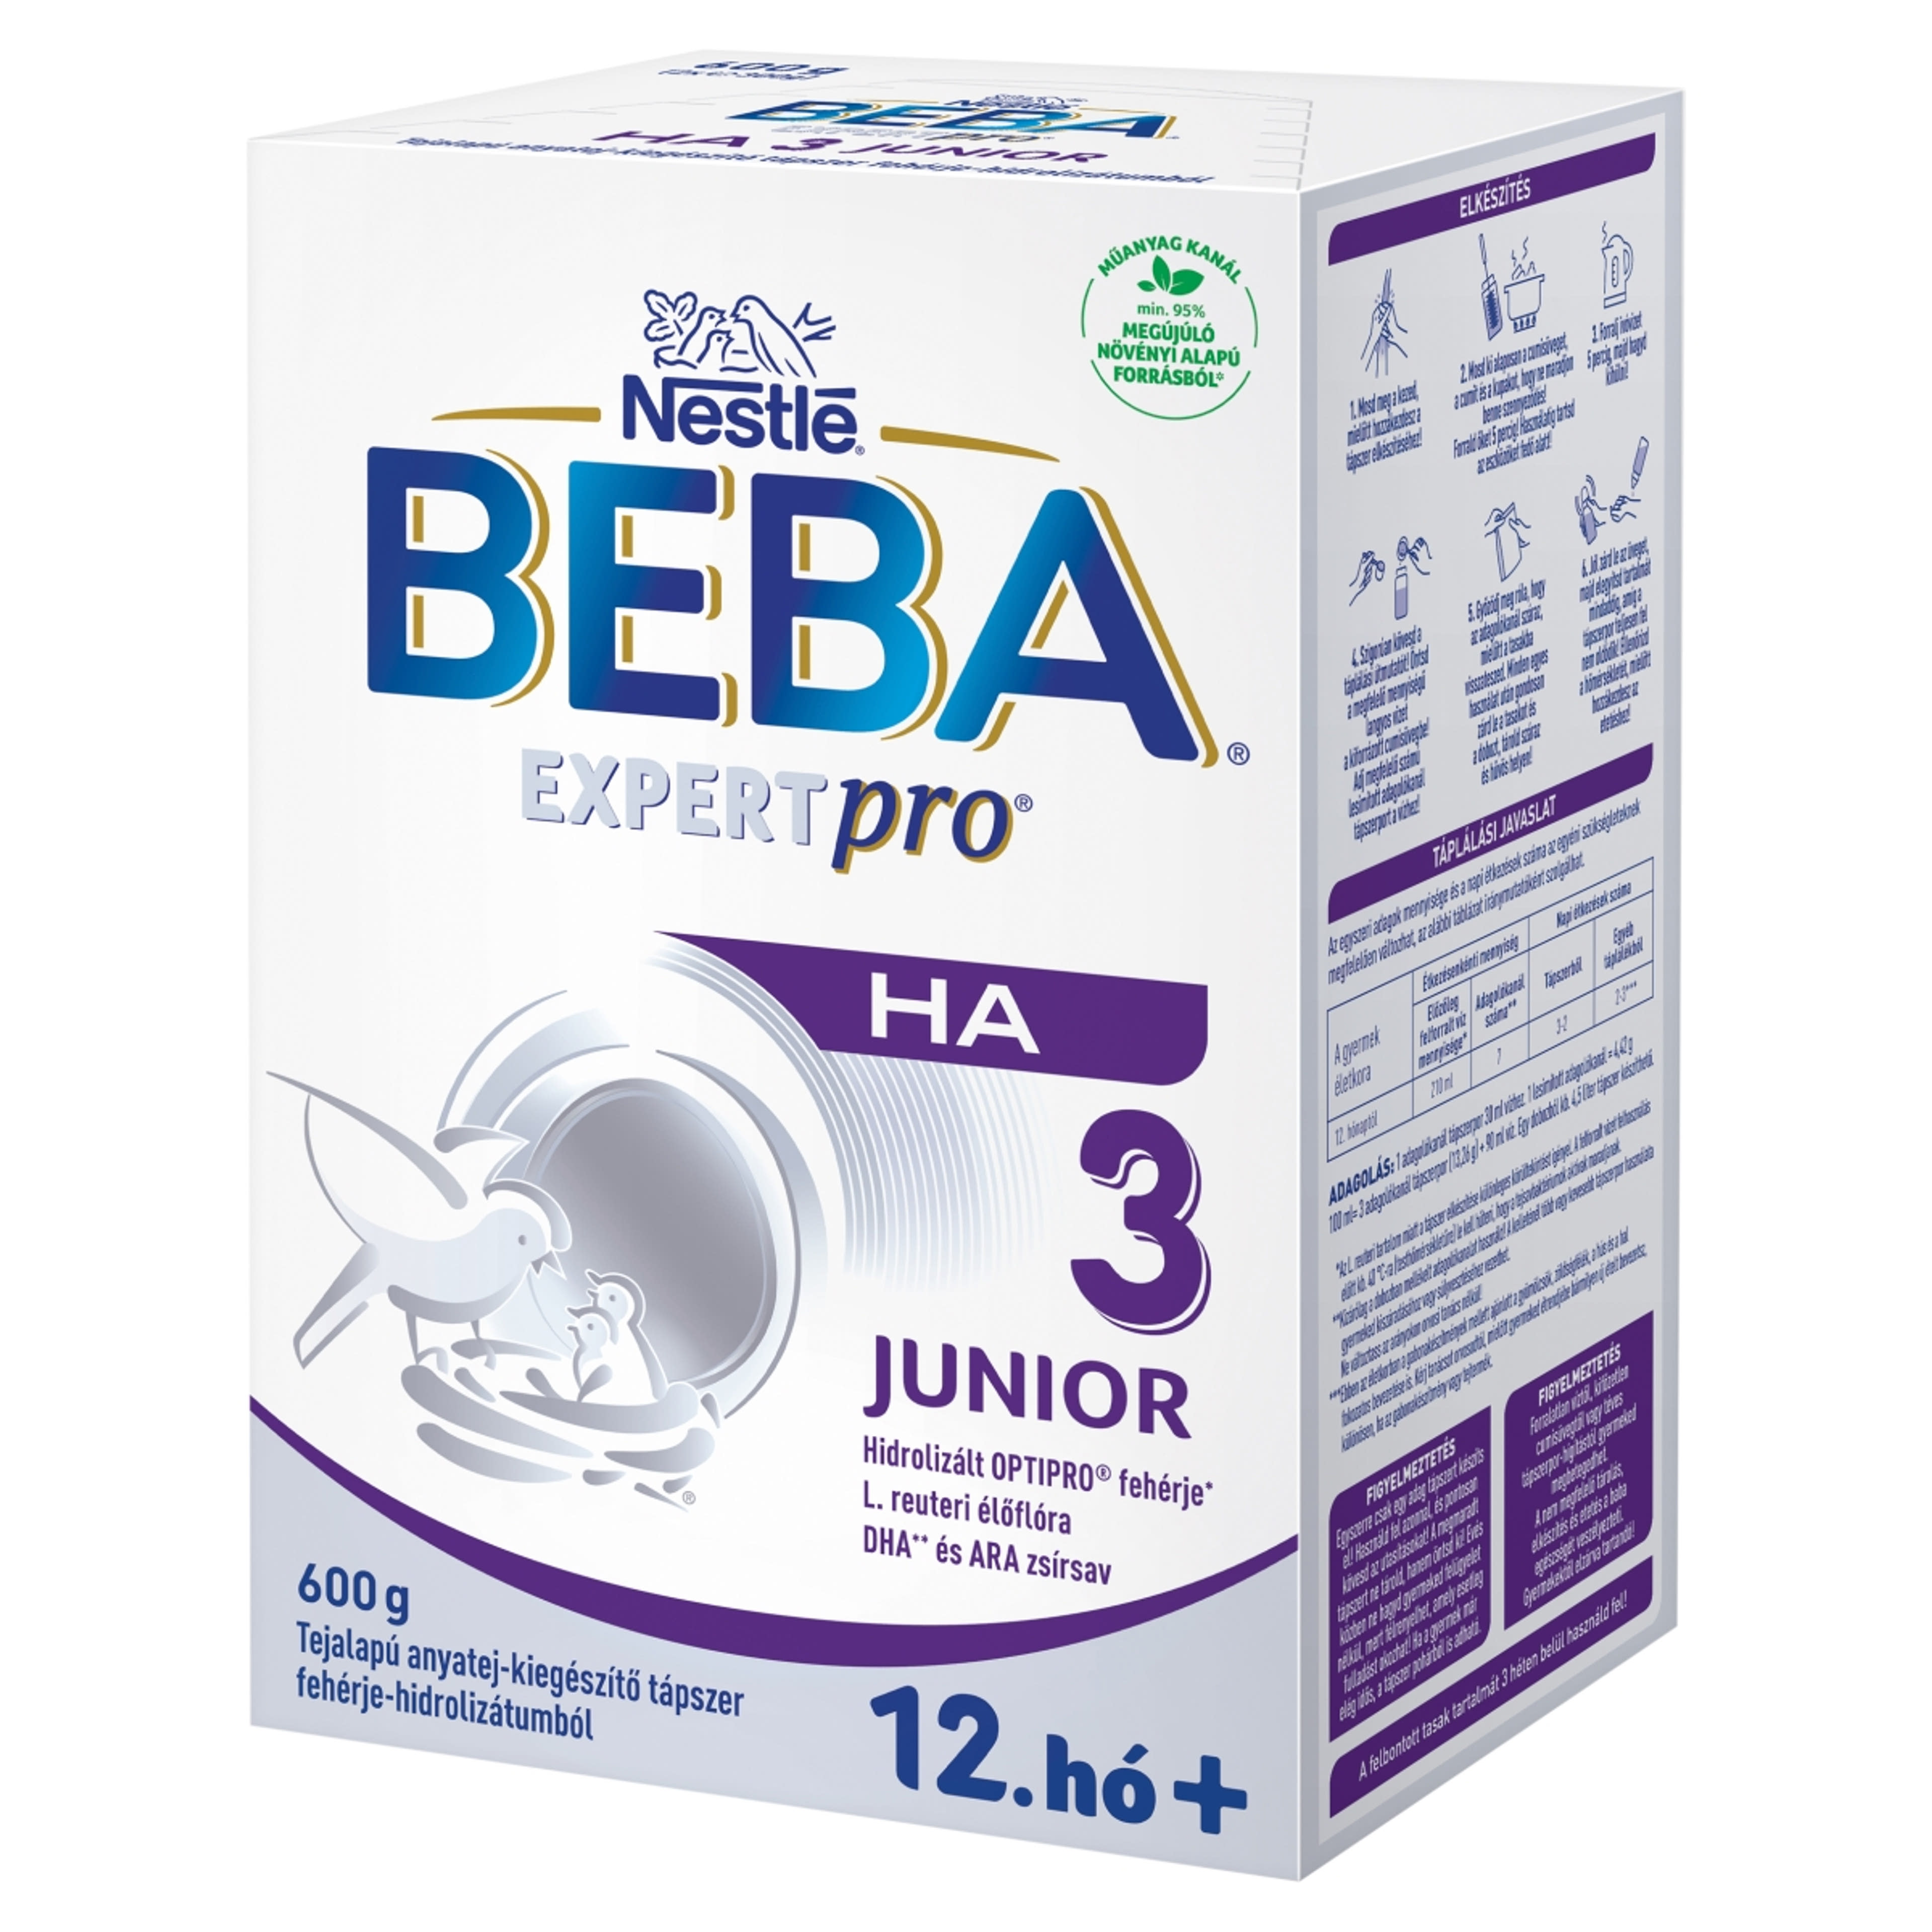 Beba Expertpro HA 3 Junior tejalapú anyatej-kiegészítő tápszer fehérje-hidrolizátumból 12.hónapos kortól - 600 g-2